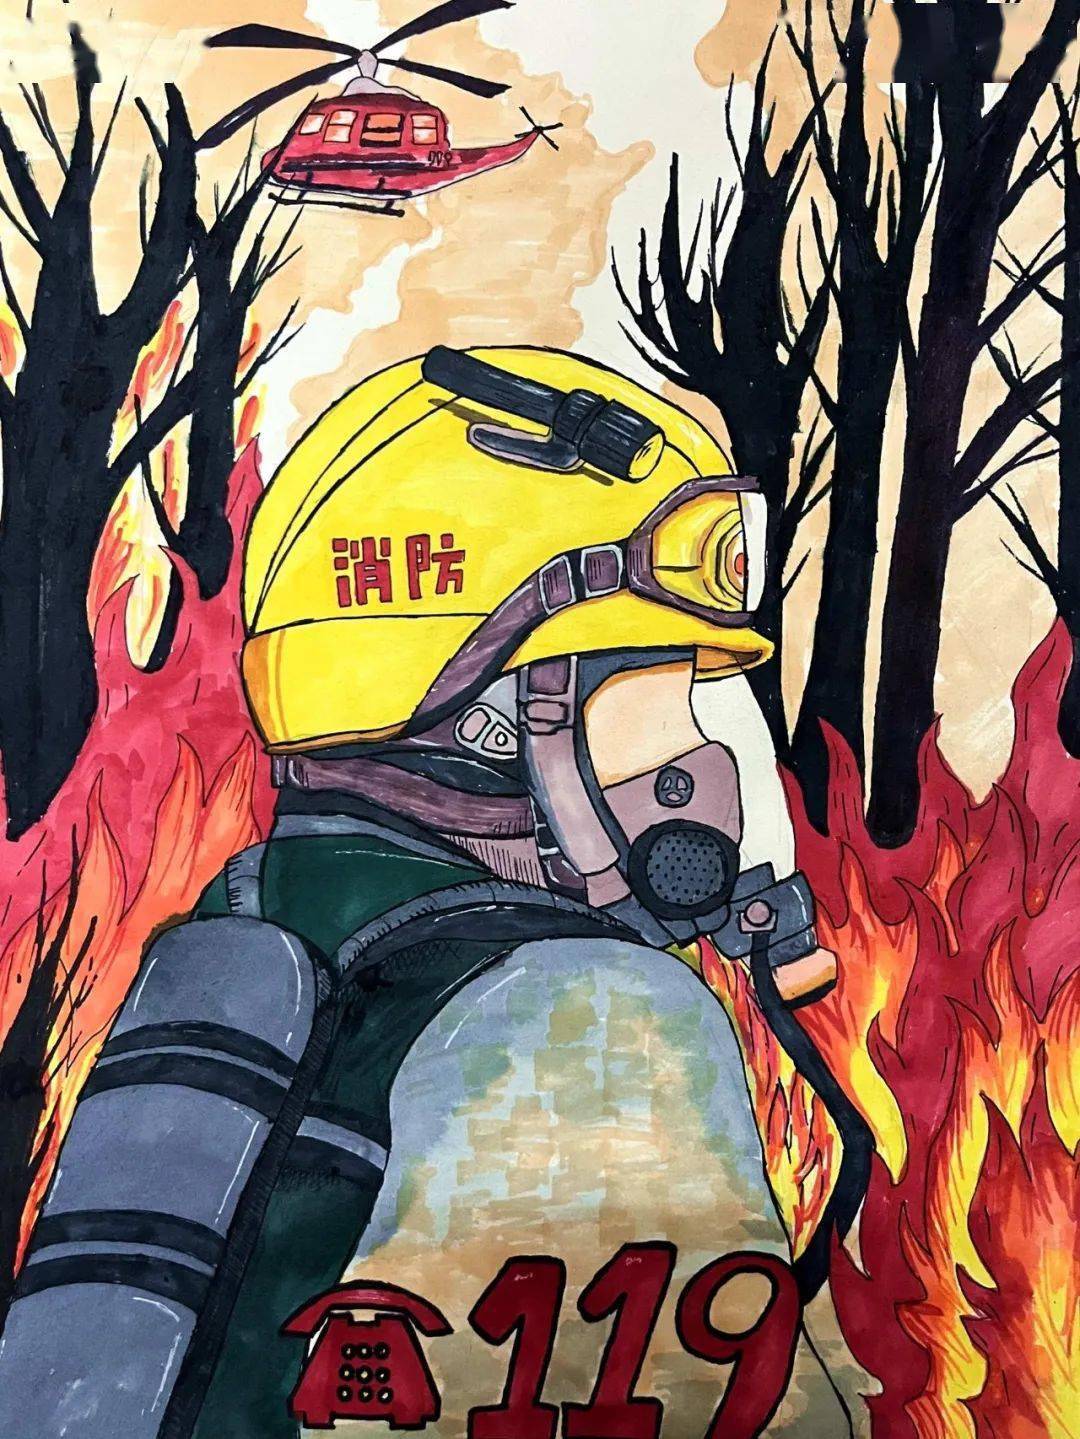 消防漫画作品简单图片